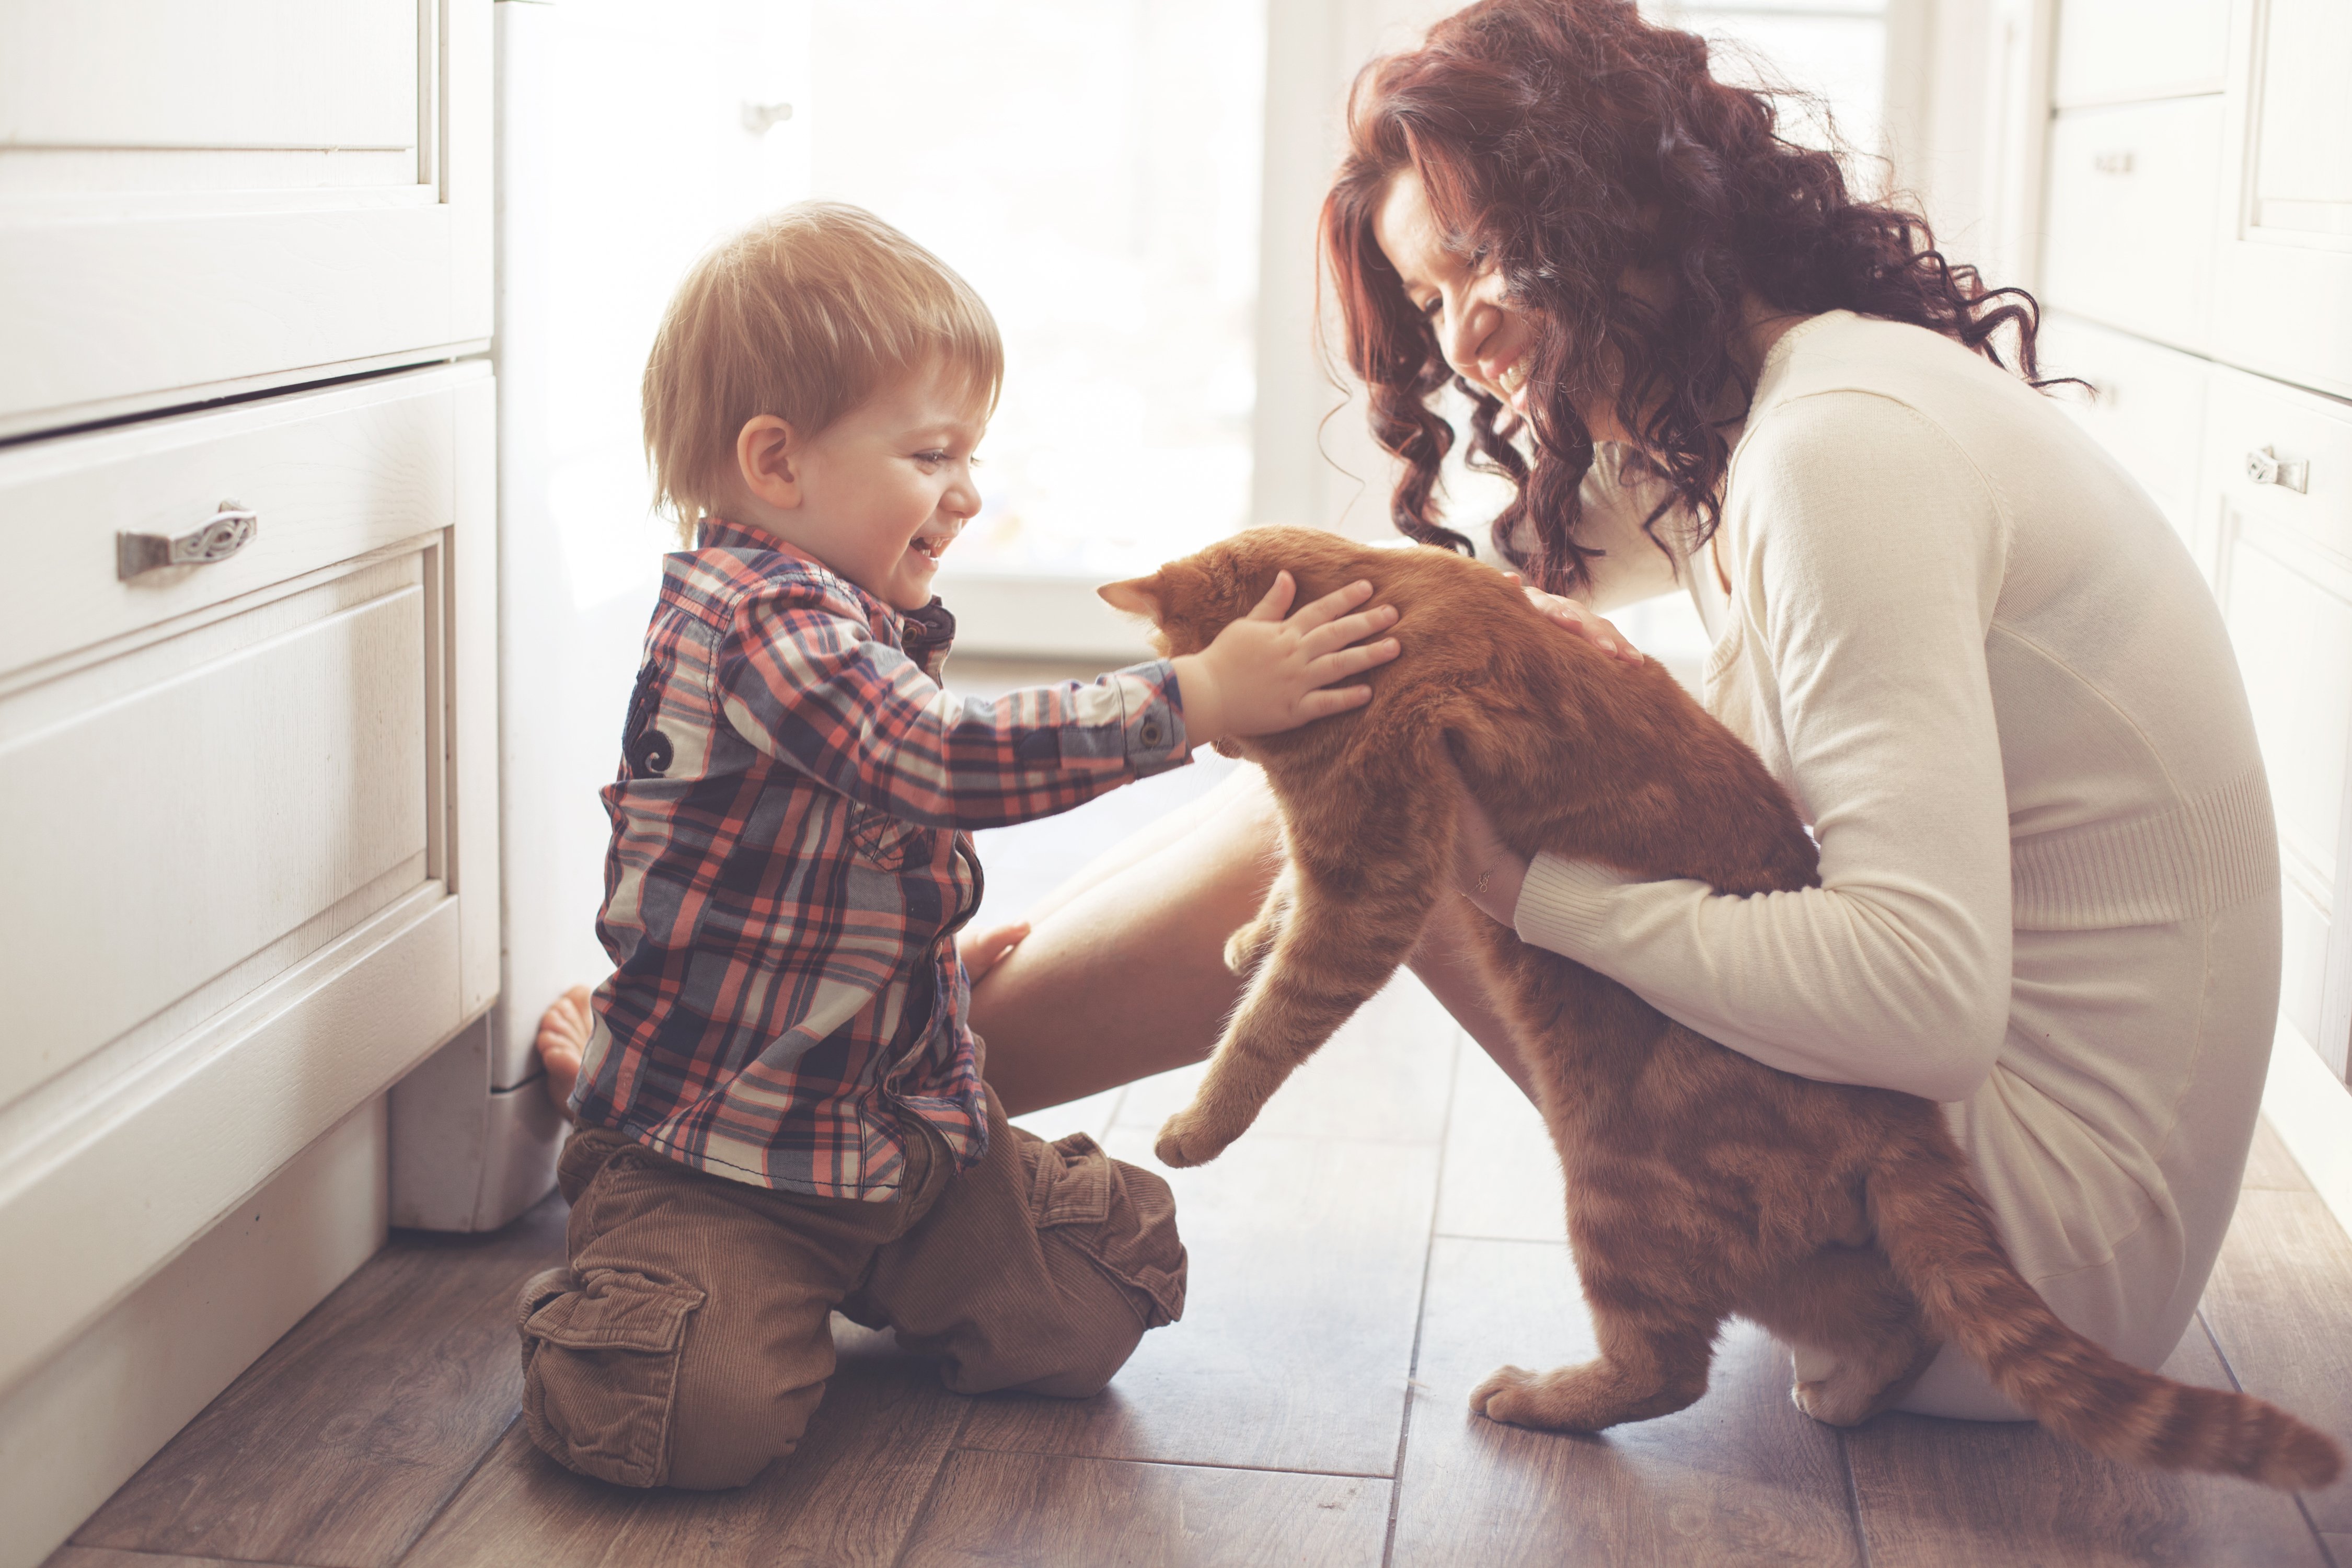 Madre jugando con su bebé y un gato en el piso de la cocina de su casa. | Foto: Shutterstock